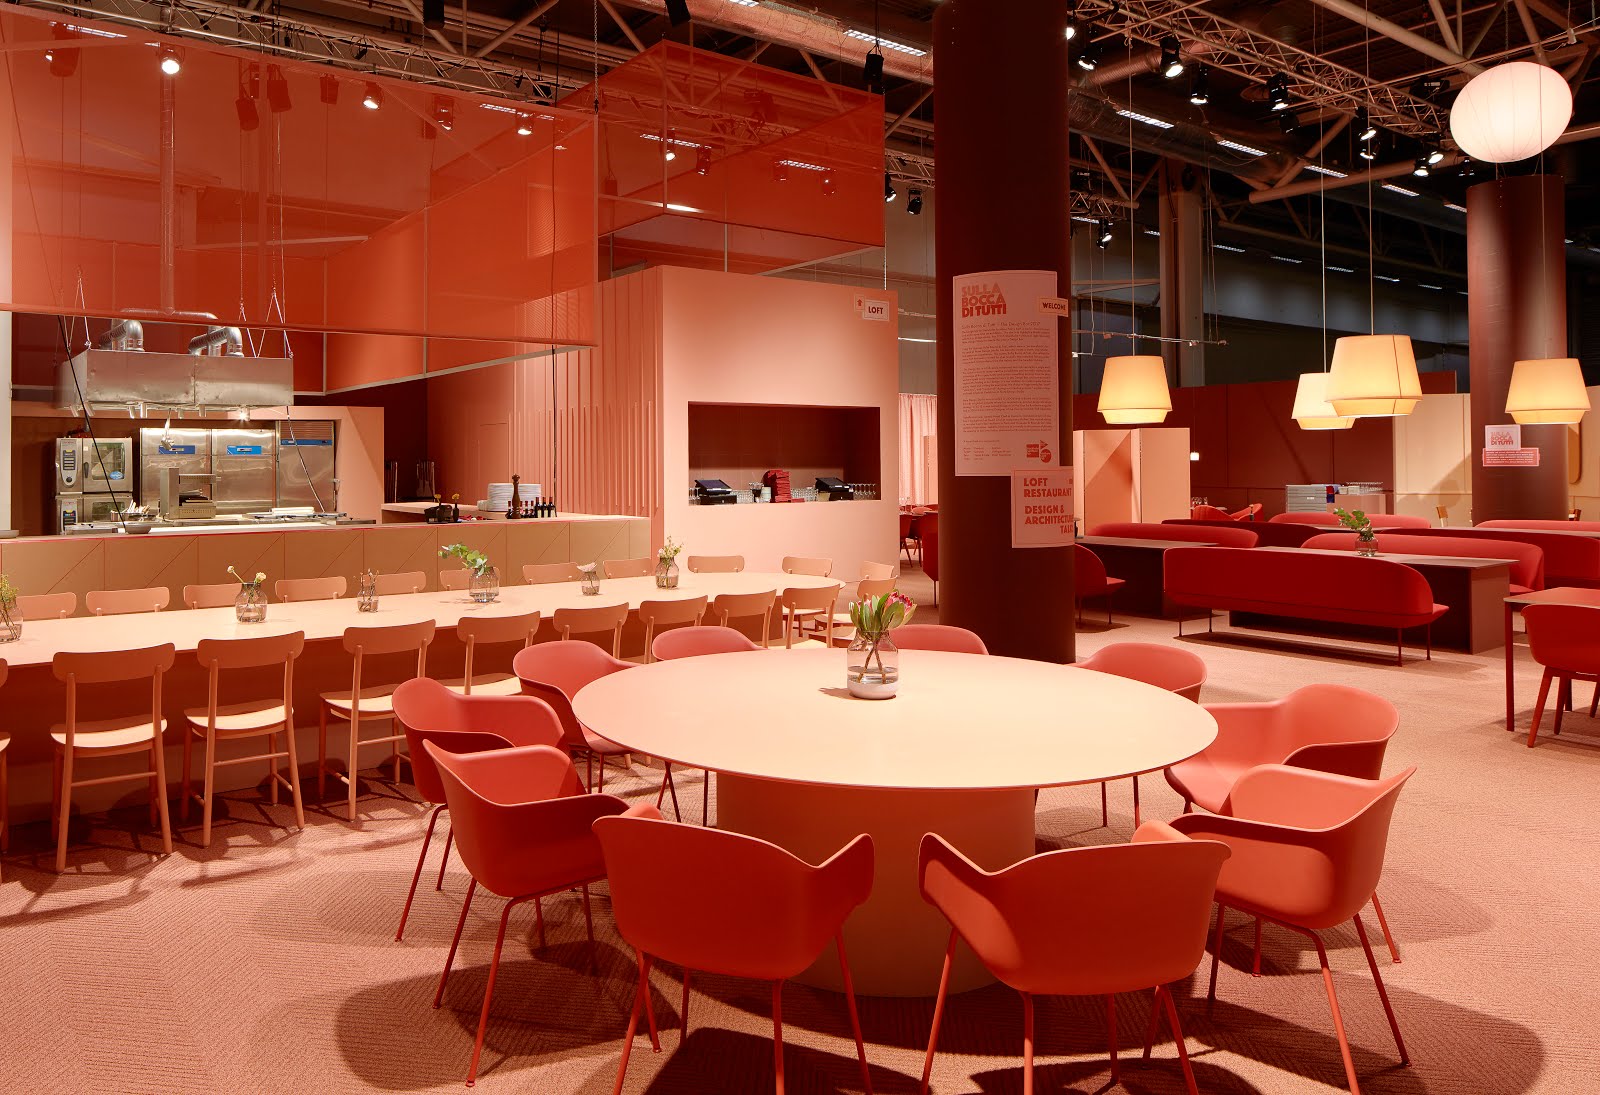 Copper Blush, stockholm furniture fair, colour trend, hello peagreen, interiors blogger